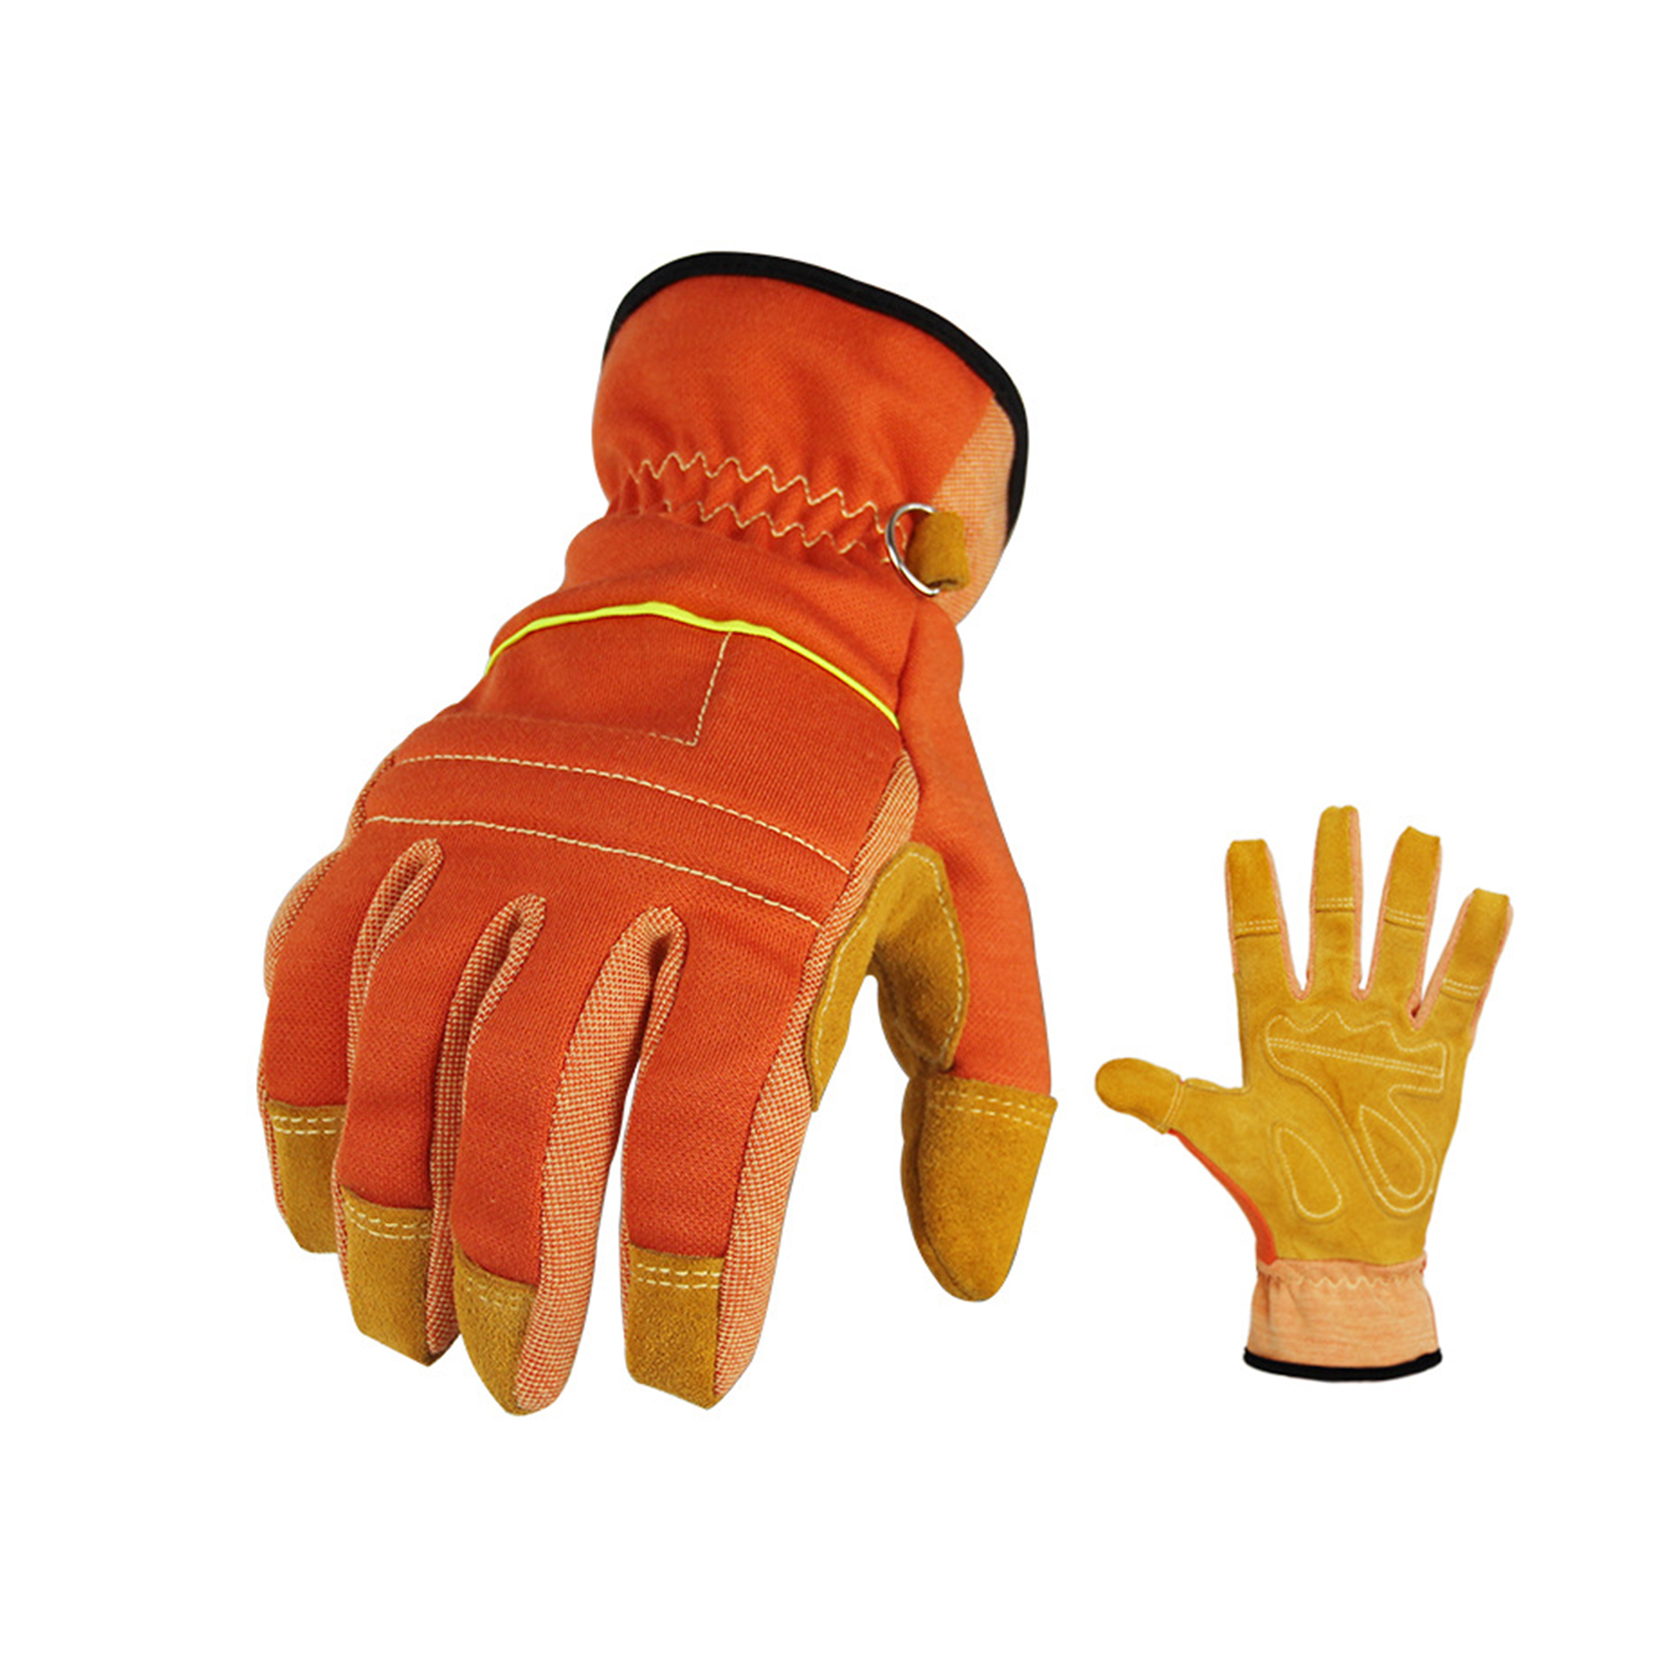 Gloves Work Utility Giştî, Men Women Leather Gardening Welding Gloves